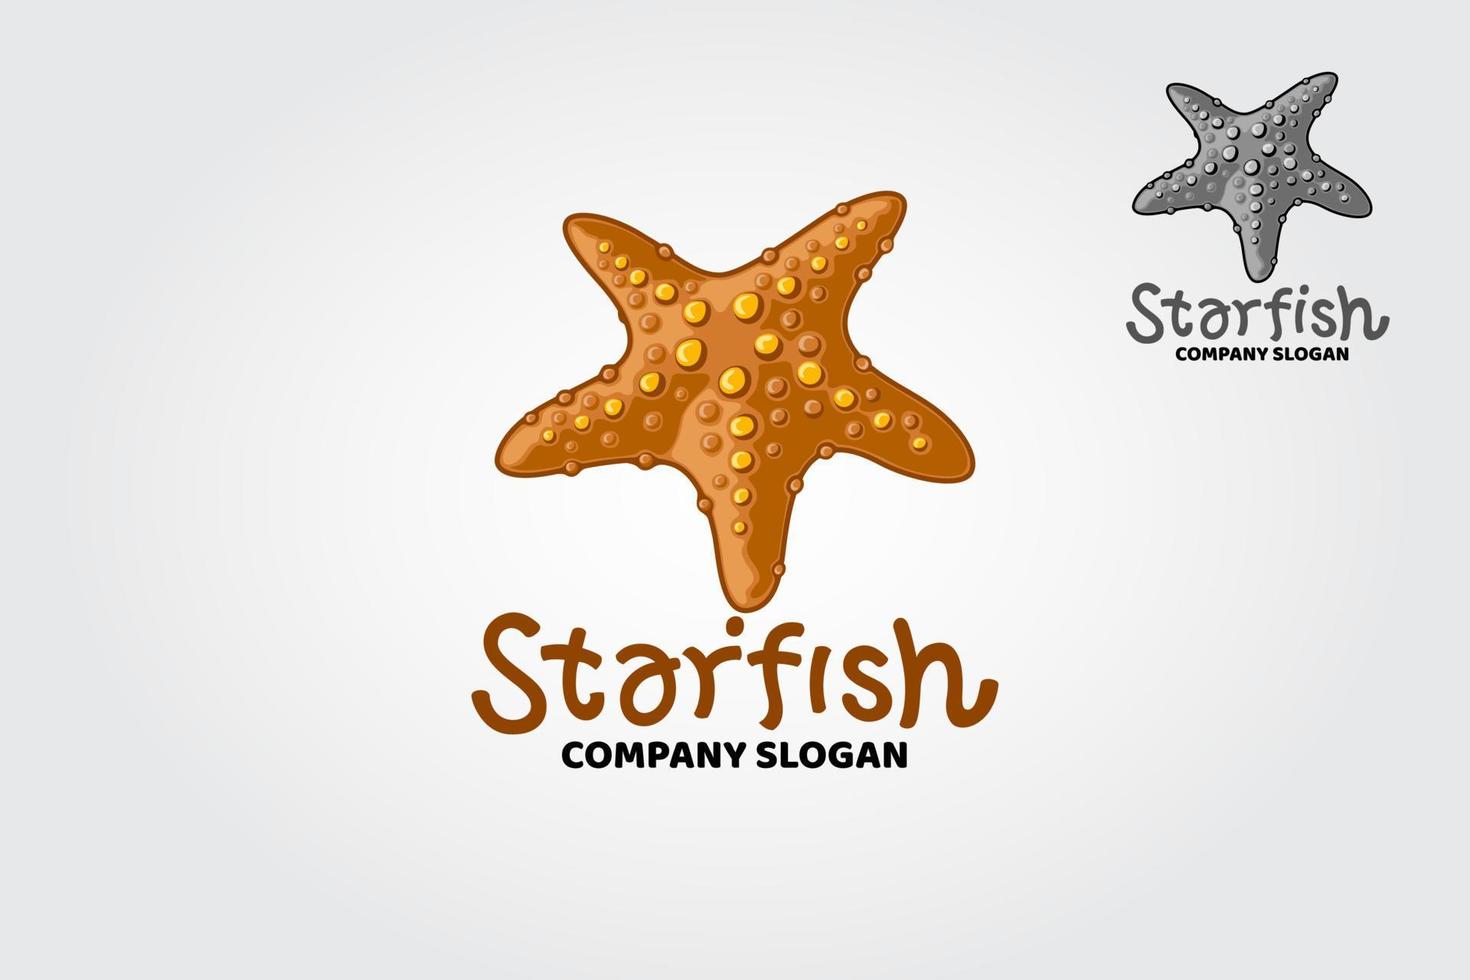 ilustración del logotipo de estrella de mar. la plantilla de logotipo vectorial es adecuada para nombres comerciales y de productos. la estrella de mar es una criatura brillante y colorida y siempre se ve muy profesional. vector